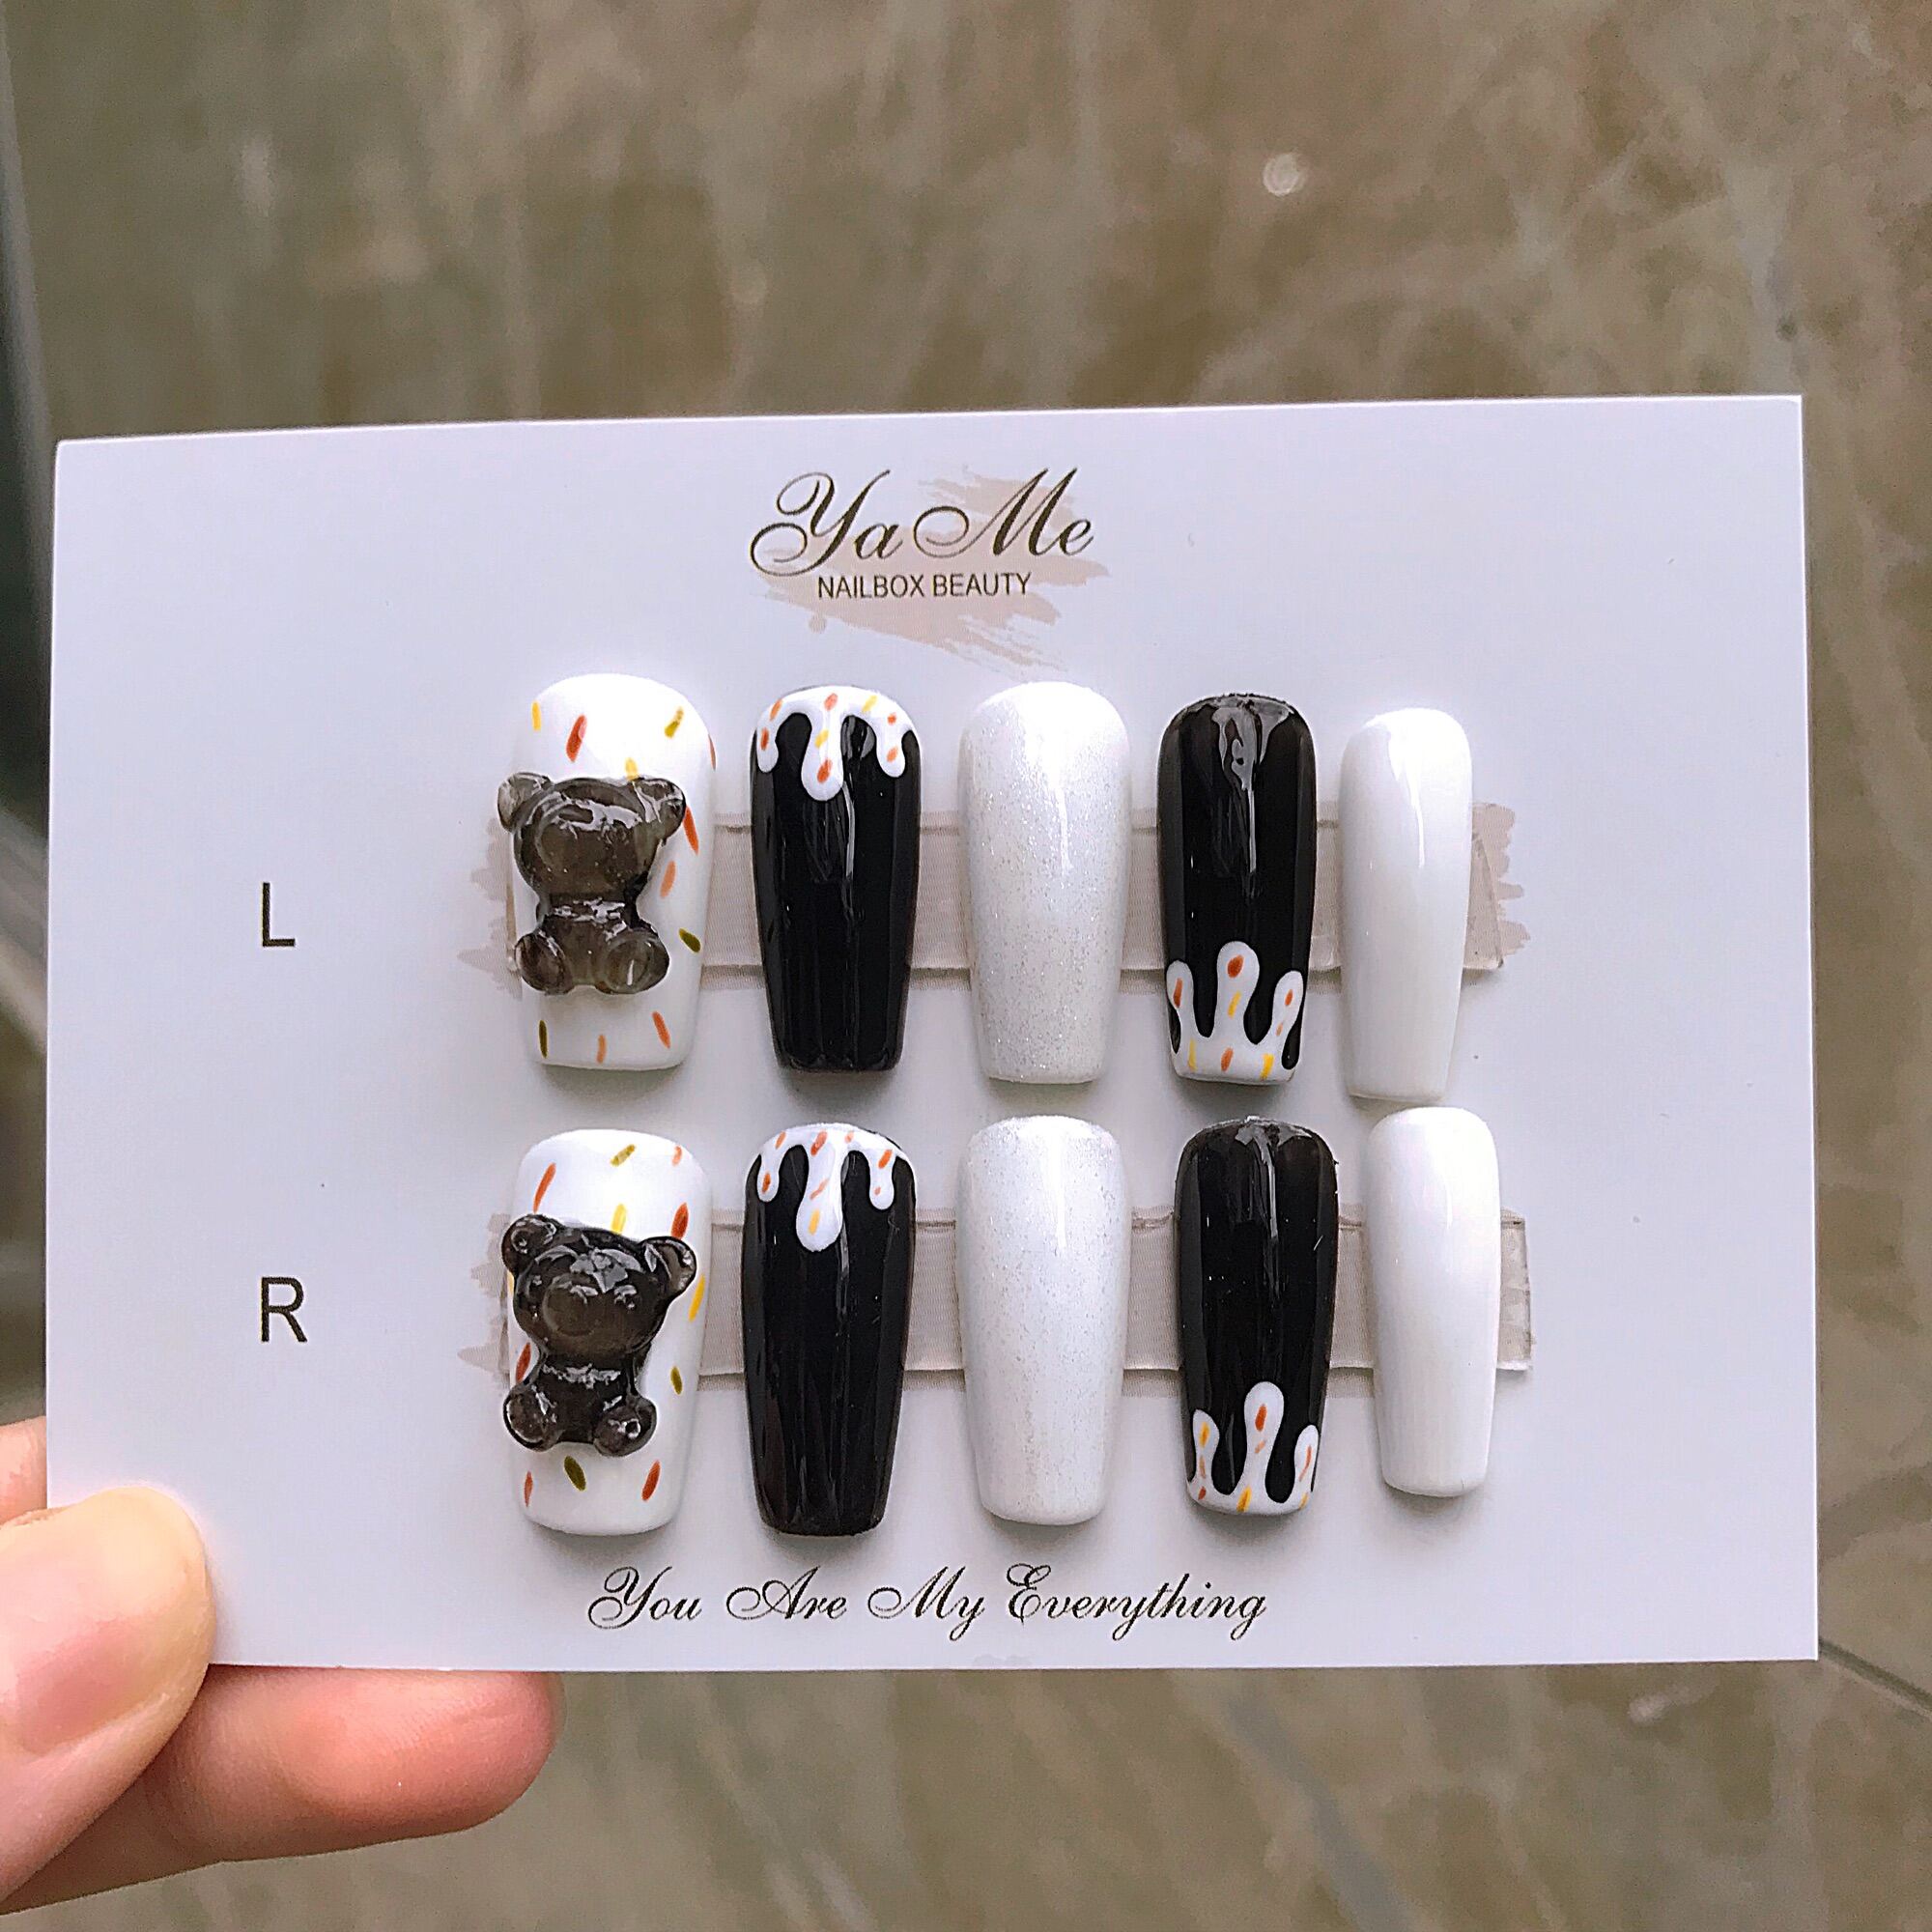 Dán Nail Box: Việc dán móng giúp tiết kiệm thời gian và chi phí cho những ai mê mẫu móng tay đa dạng. Dán Nail Box còn giúp móng tay bạn luôn tươi mới và đẹp trong thời gian dài, thật hoàn hảo cho những người luôn theo đuổi sự hoàn hảo.